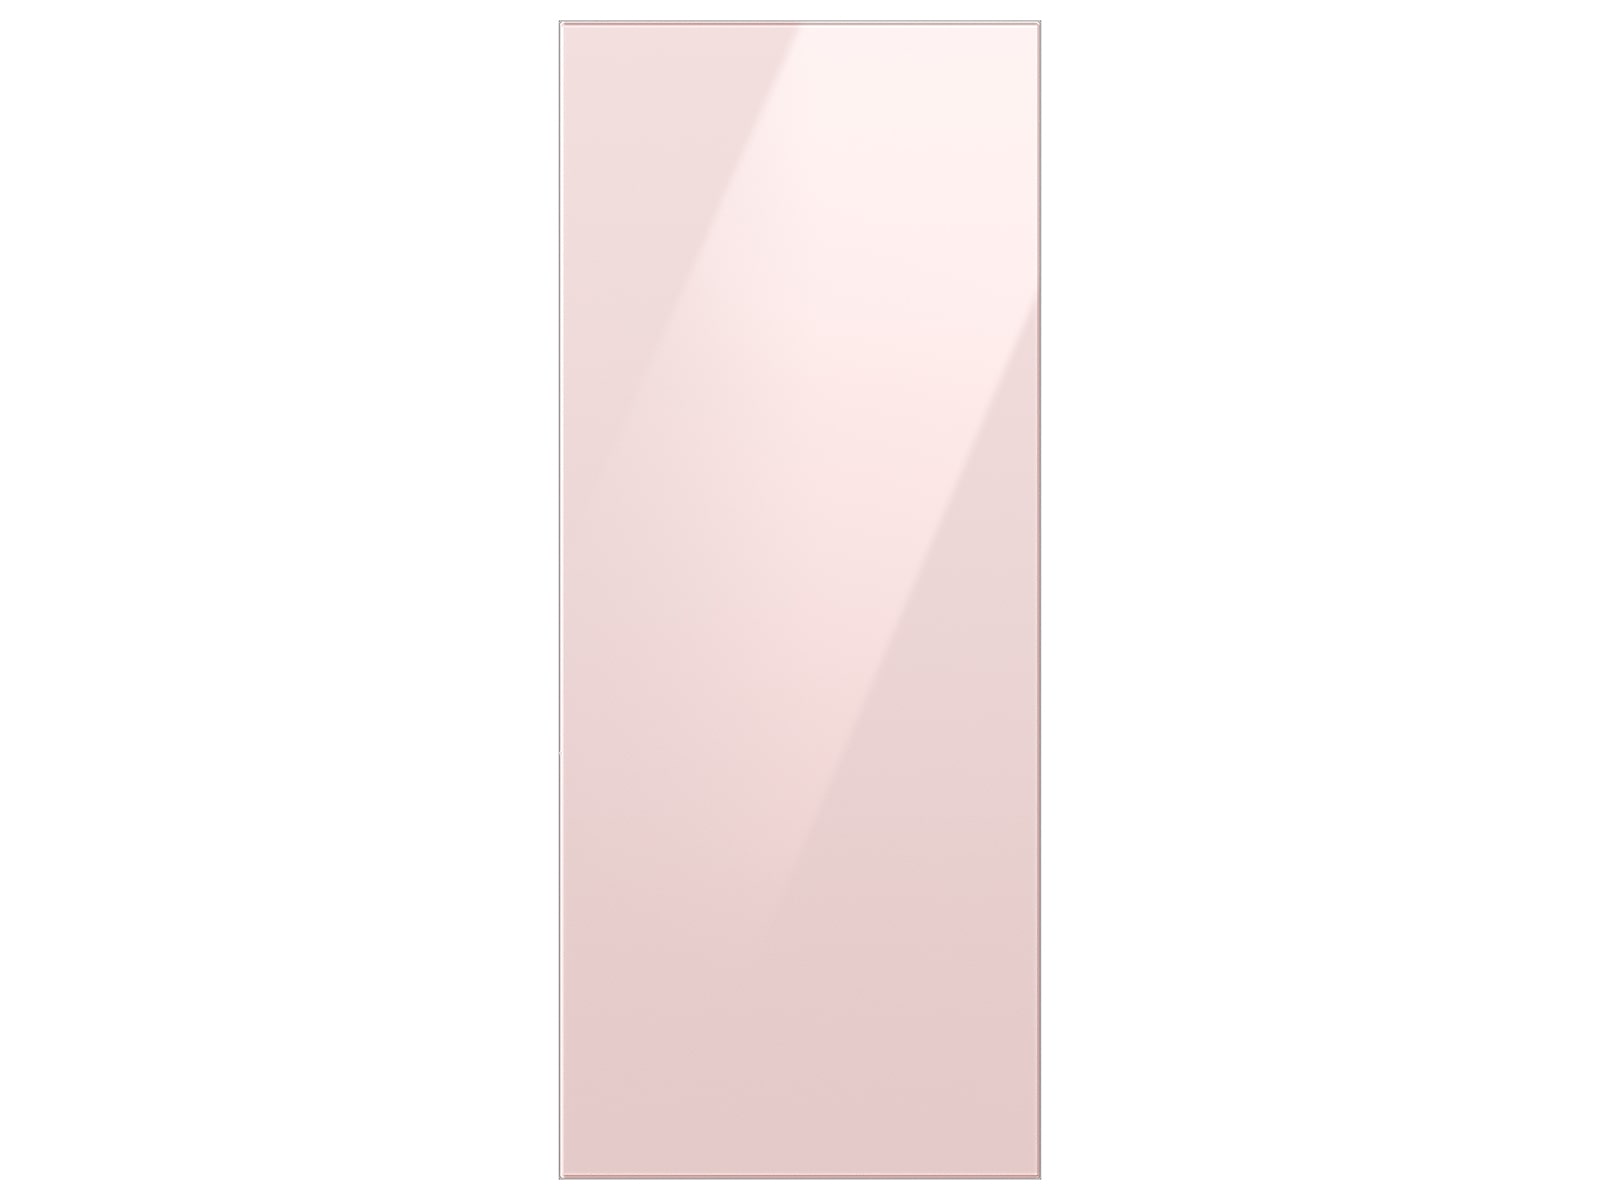 Photos - Fridge Samsung Bespoke 3-Door French Door Refrigerator Panel in Pink Glass - Top 